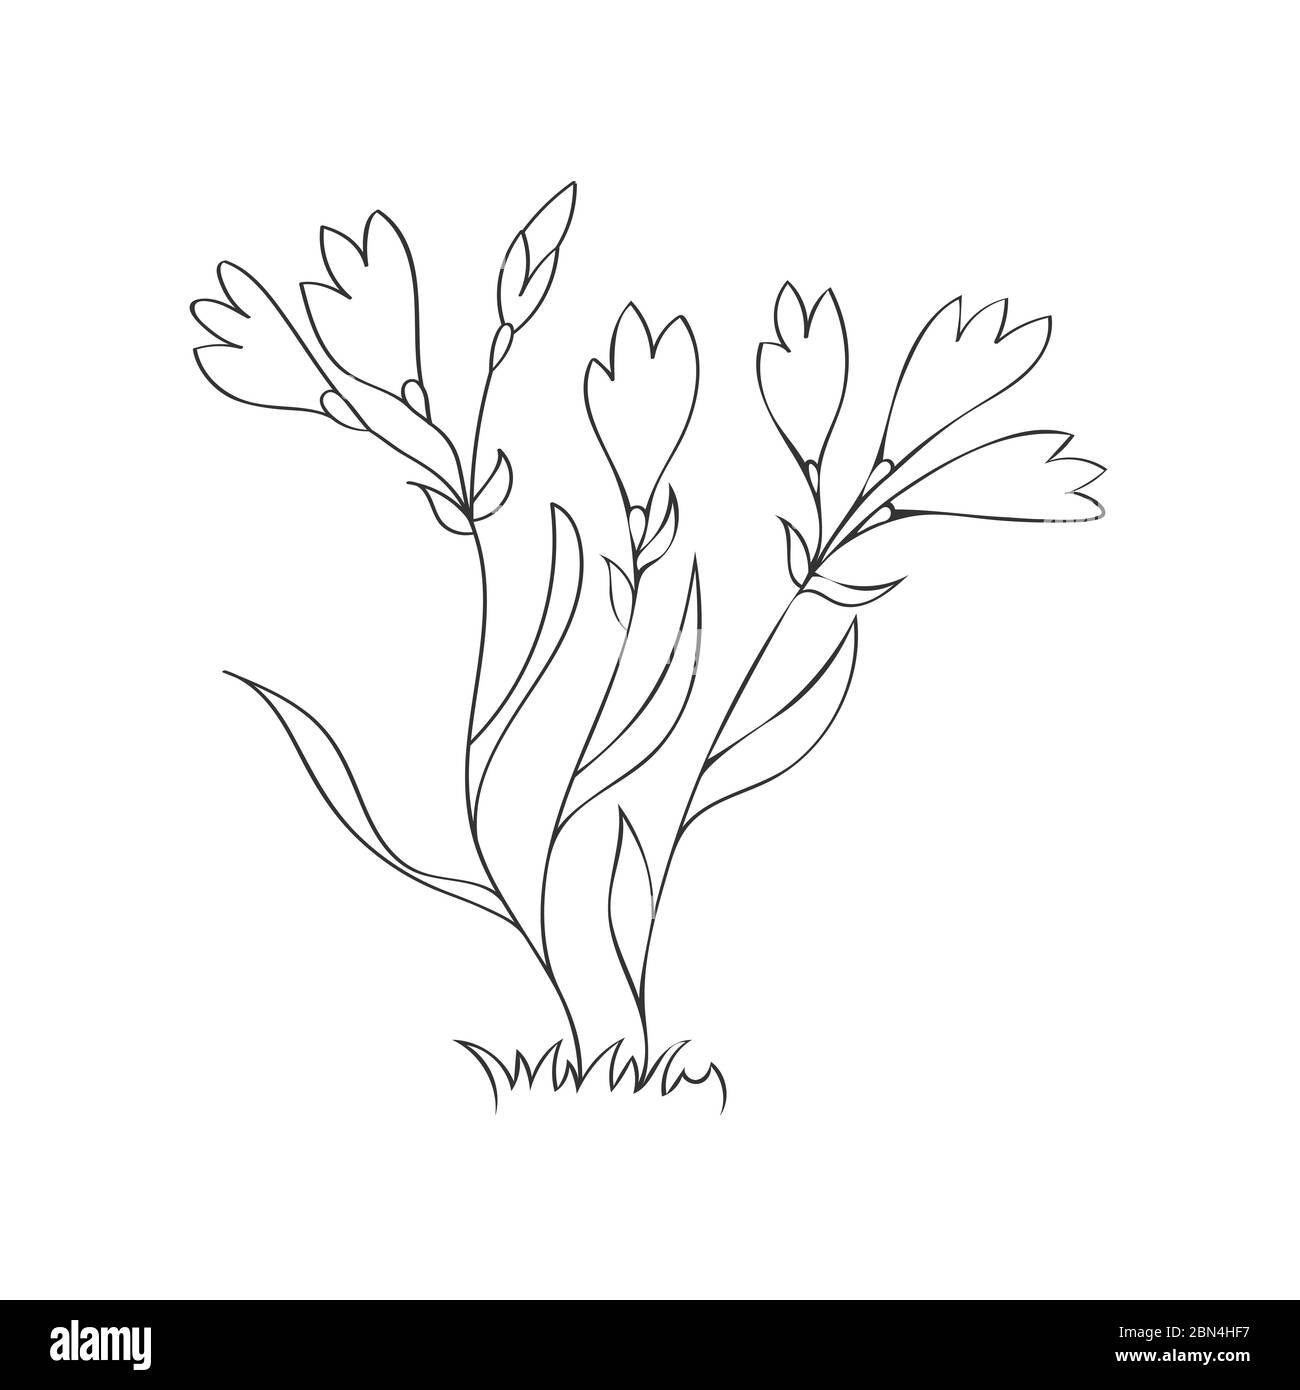 Vektorgrafik einer Blume. Stock Illustration isoliert auf einem weißen Hintergrund lineares Design für thematische Zeichnungen und Scrapbooking Stock Vektor